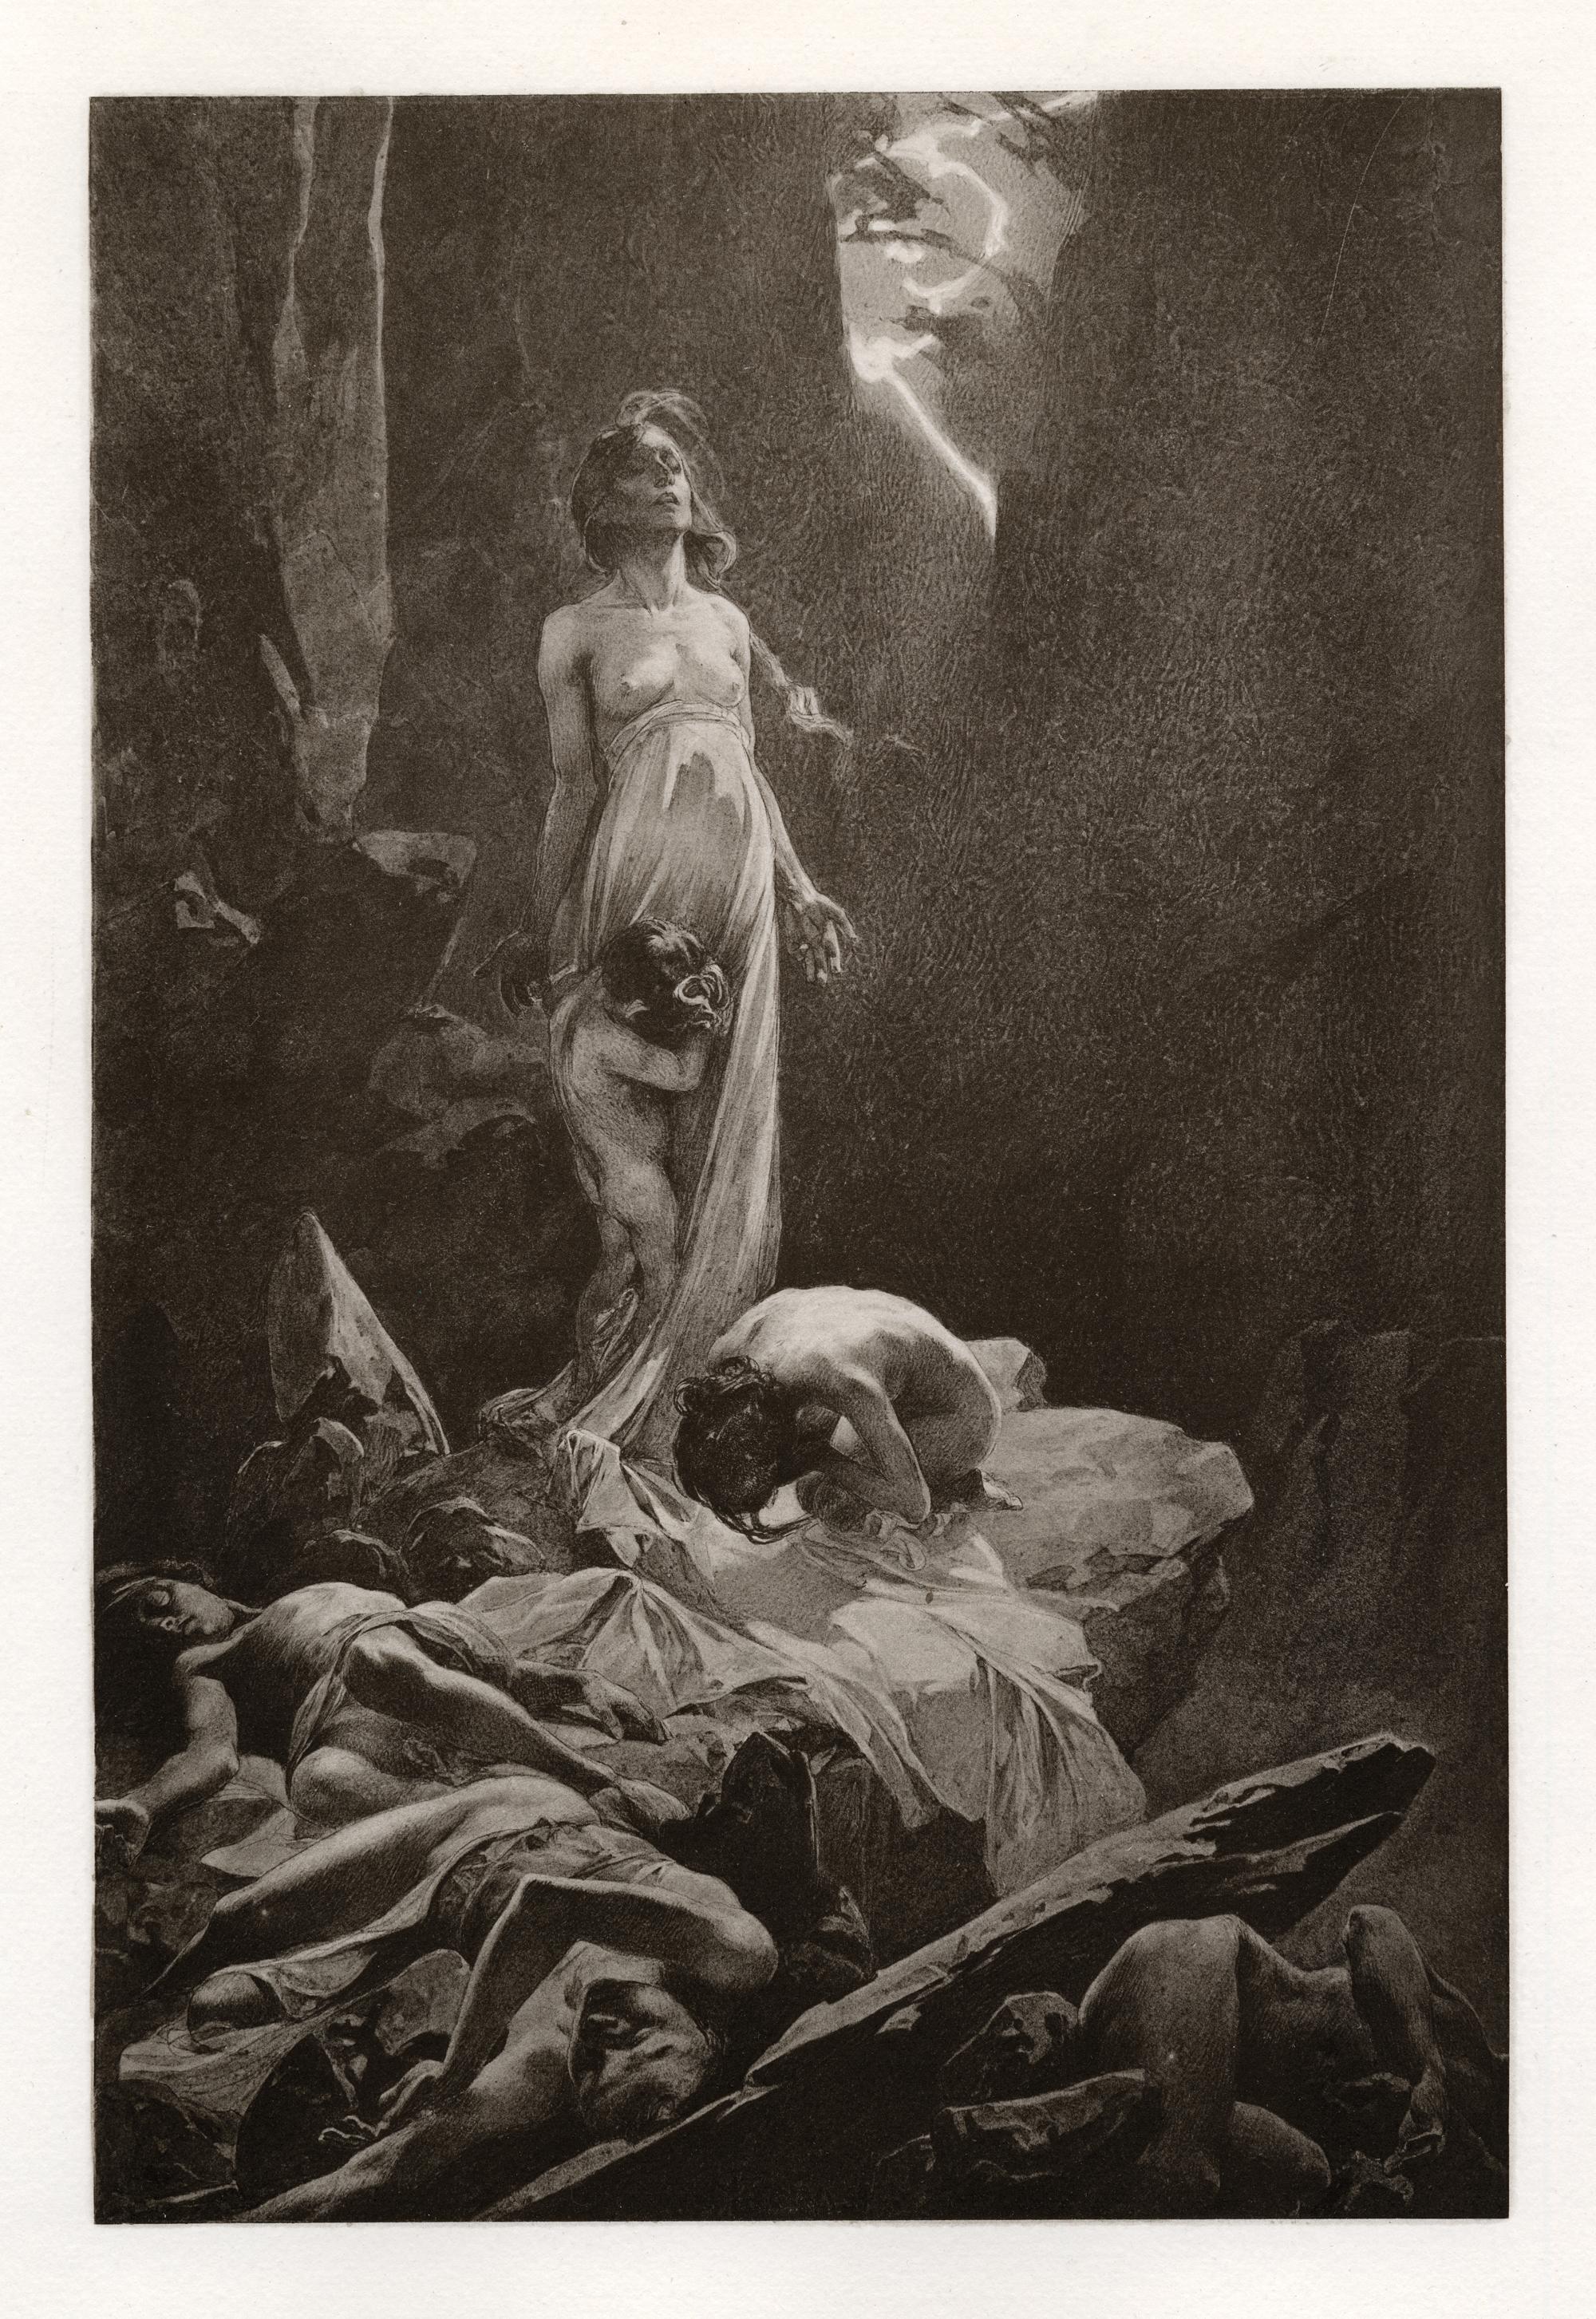 Alphonse Mucha war vor allem als Plakatkünstler tätig und wurde in den späten 1890er Jahren, als sich Plakatillustrationen als populäre Kunstform durchsetzten und neue Druckverfahren entwickelt wurden, zu einer einflussreichen Figur des